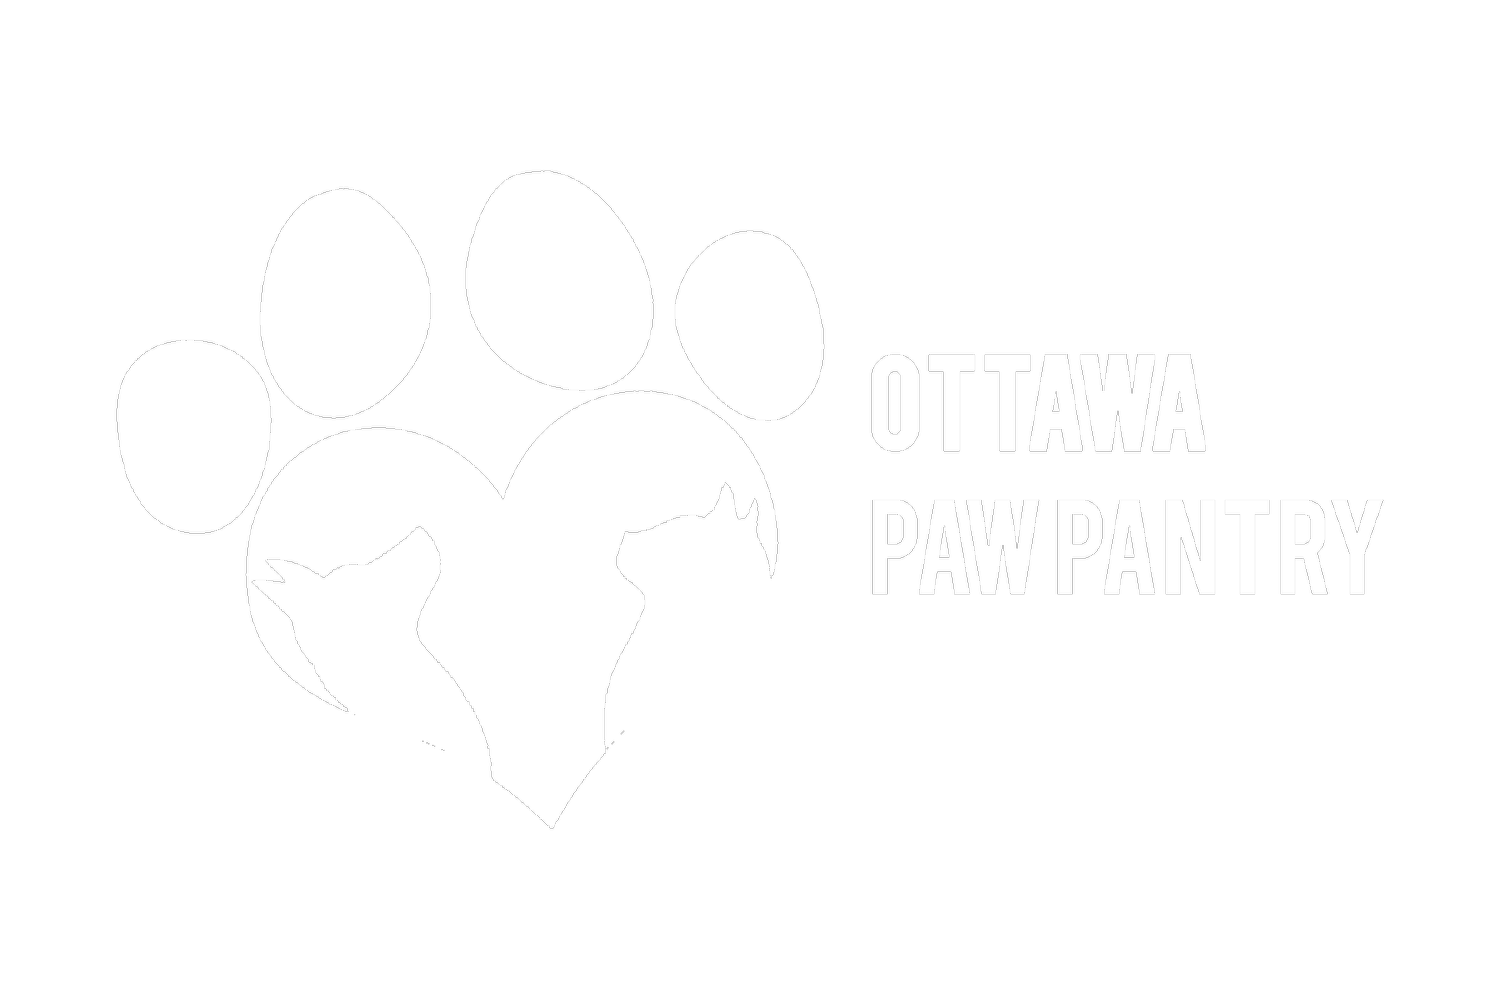 Ottawa Paw Pantry